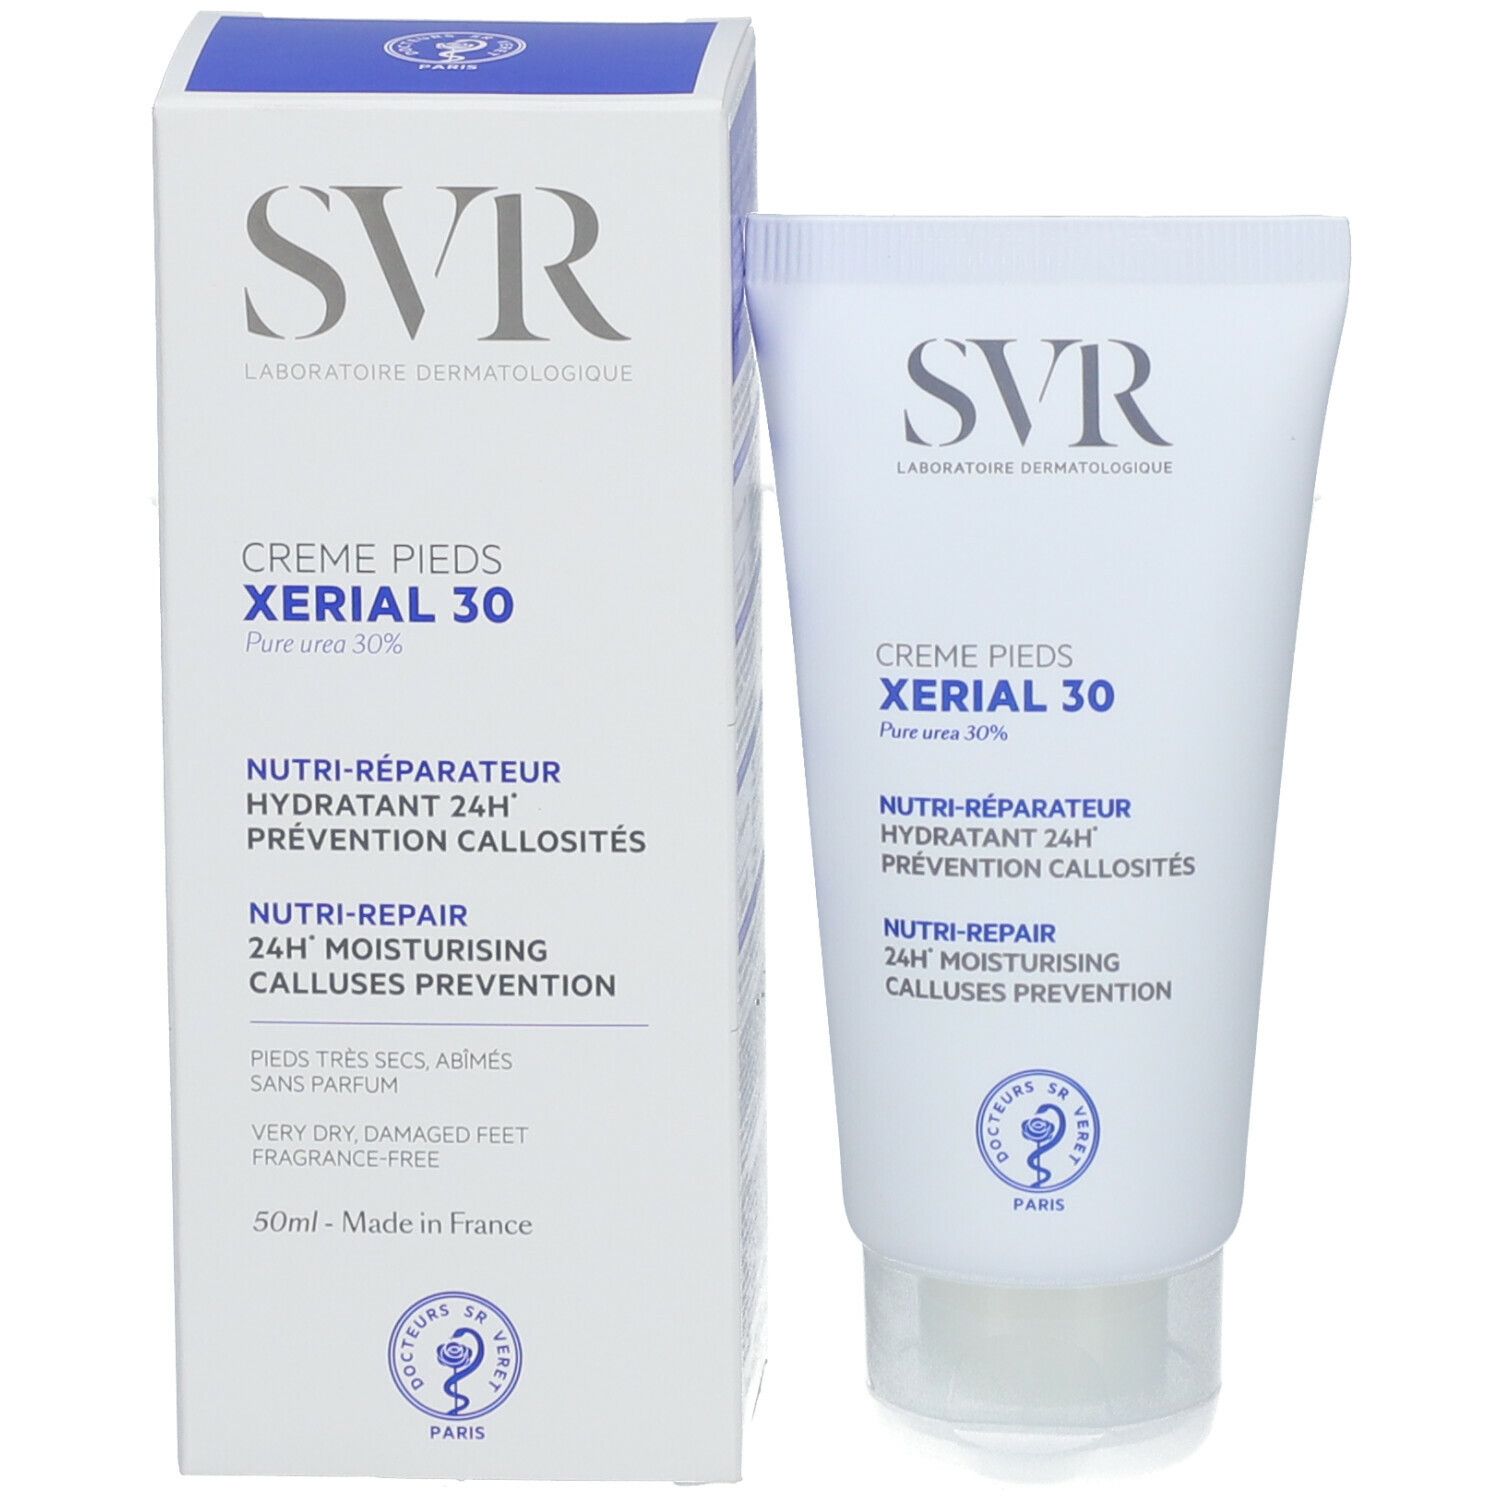 SVR Xérial 30 crème pieds - shop-pharmacie.fr